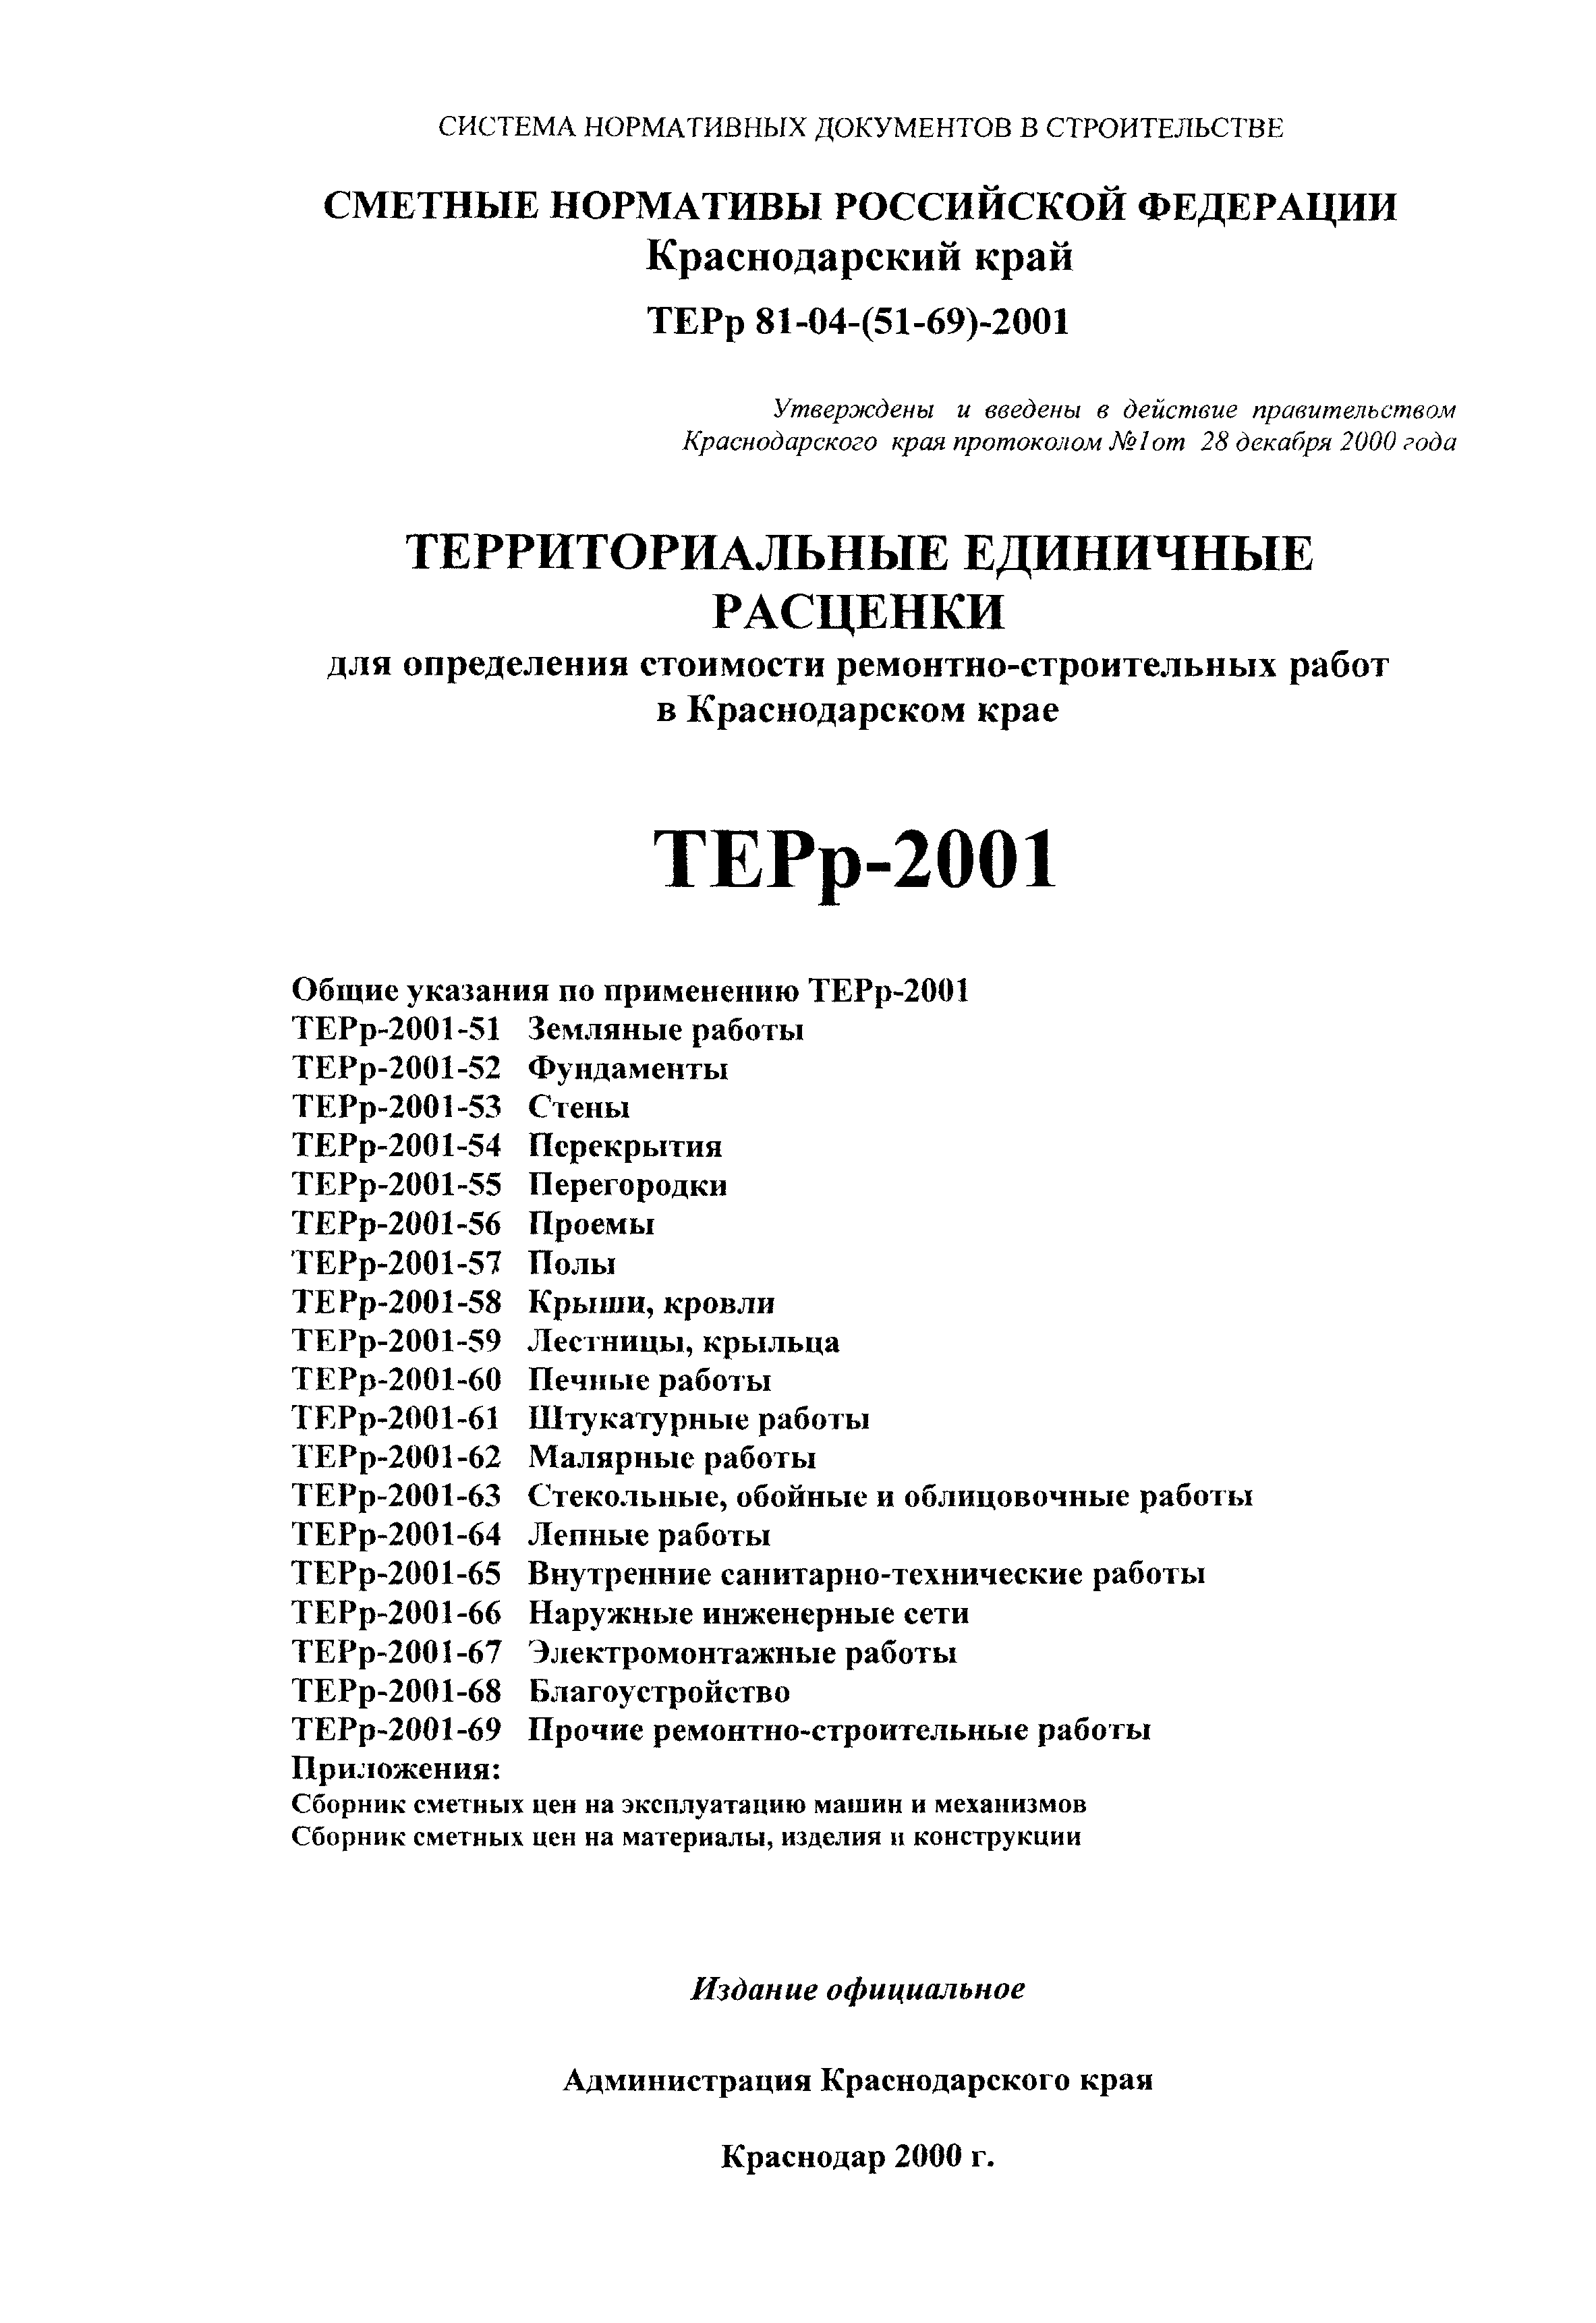 ТЕРр Краснодарского края 2001-57